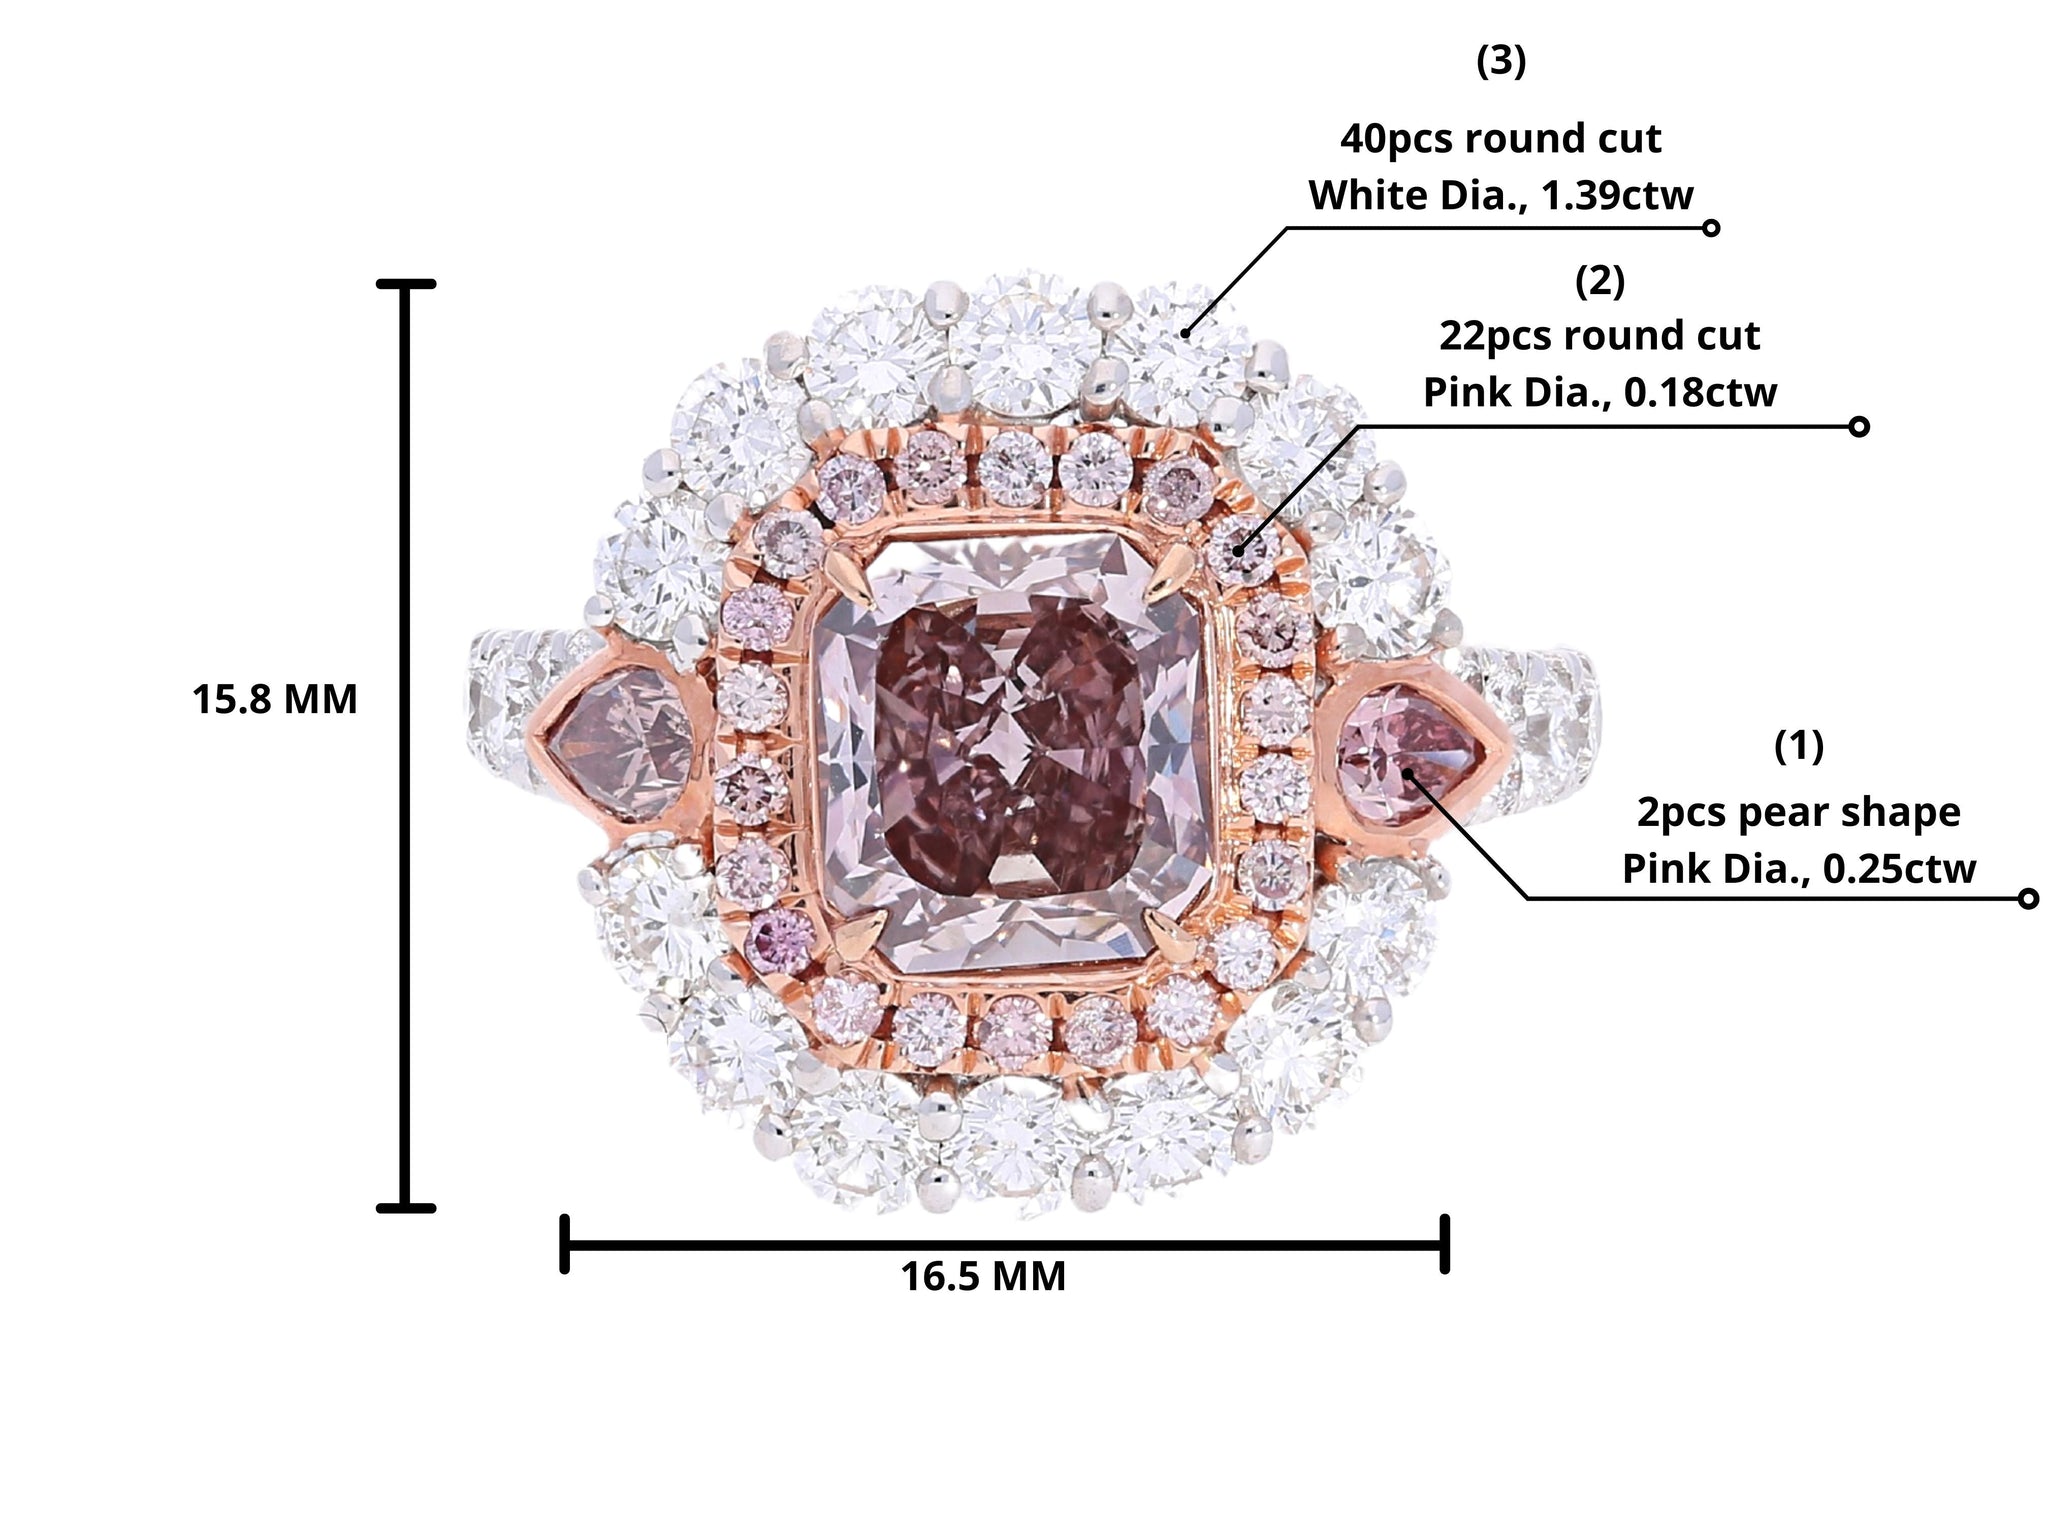 GIA Certified 3.48 Carat Light Pink Radiant Cut Diamond Ring